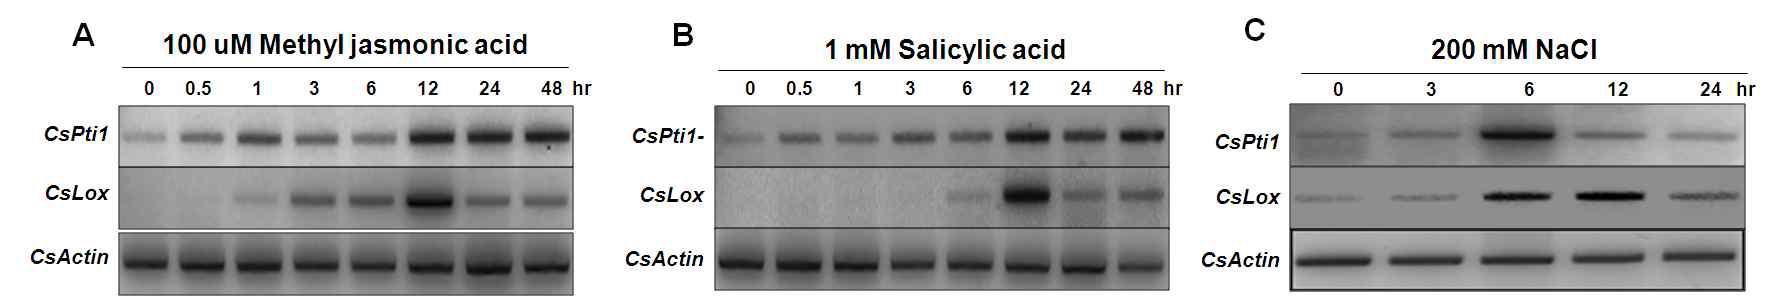 병 방어반응관련 식물 호르몬 처리시에 CsPti1유전자의 발현양상. (A) Methyl jasmonic acid, (B) Salicylic acid를 오이 잎에 spray처리한 후 발현 양상 분석 (C) NaCl은 잎을 200 mM 용액에 deeping 처리한 후 시간대별로 조사